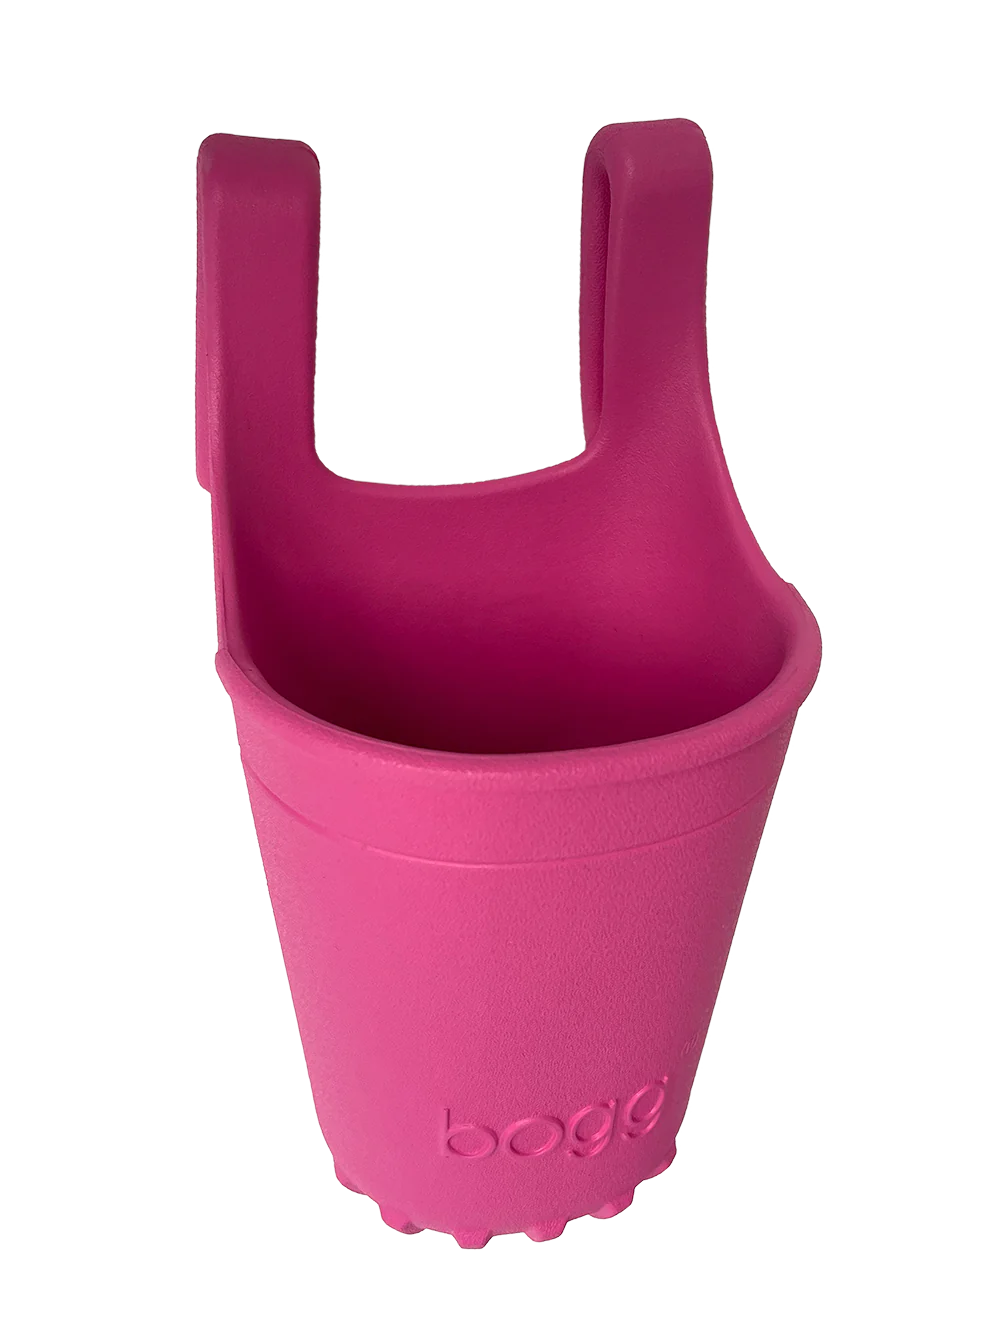 Cup Holder for Bogg Bag, 2 Pack Drink Holder Accessories for Bogg